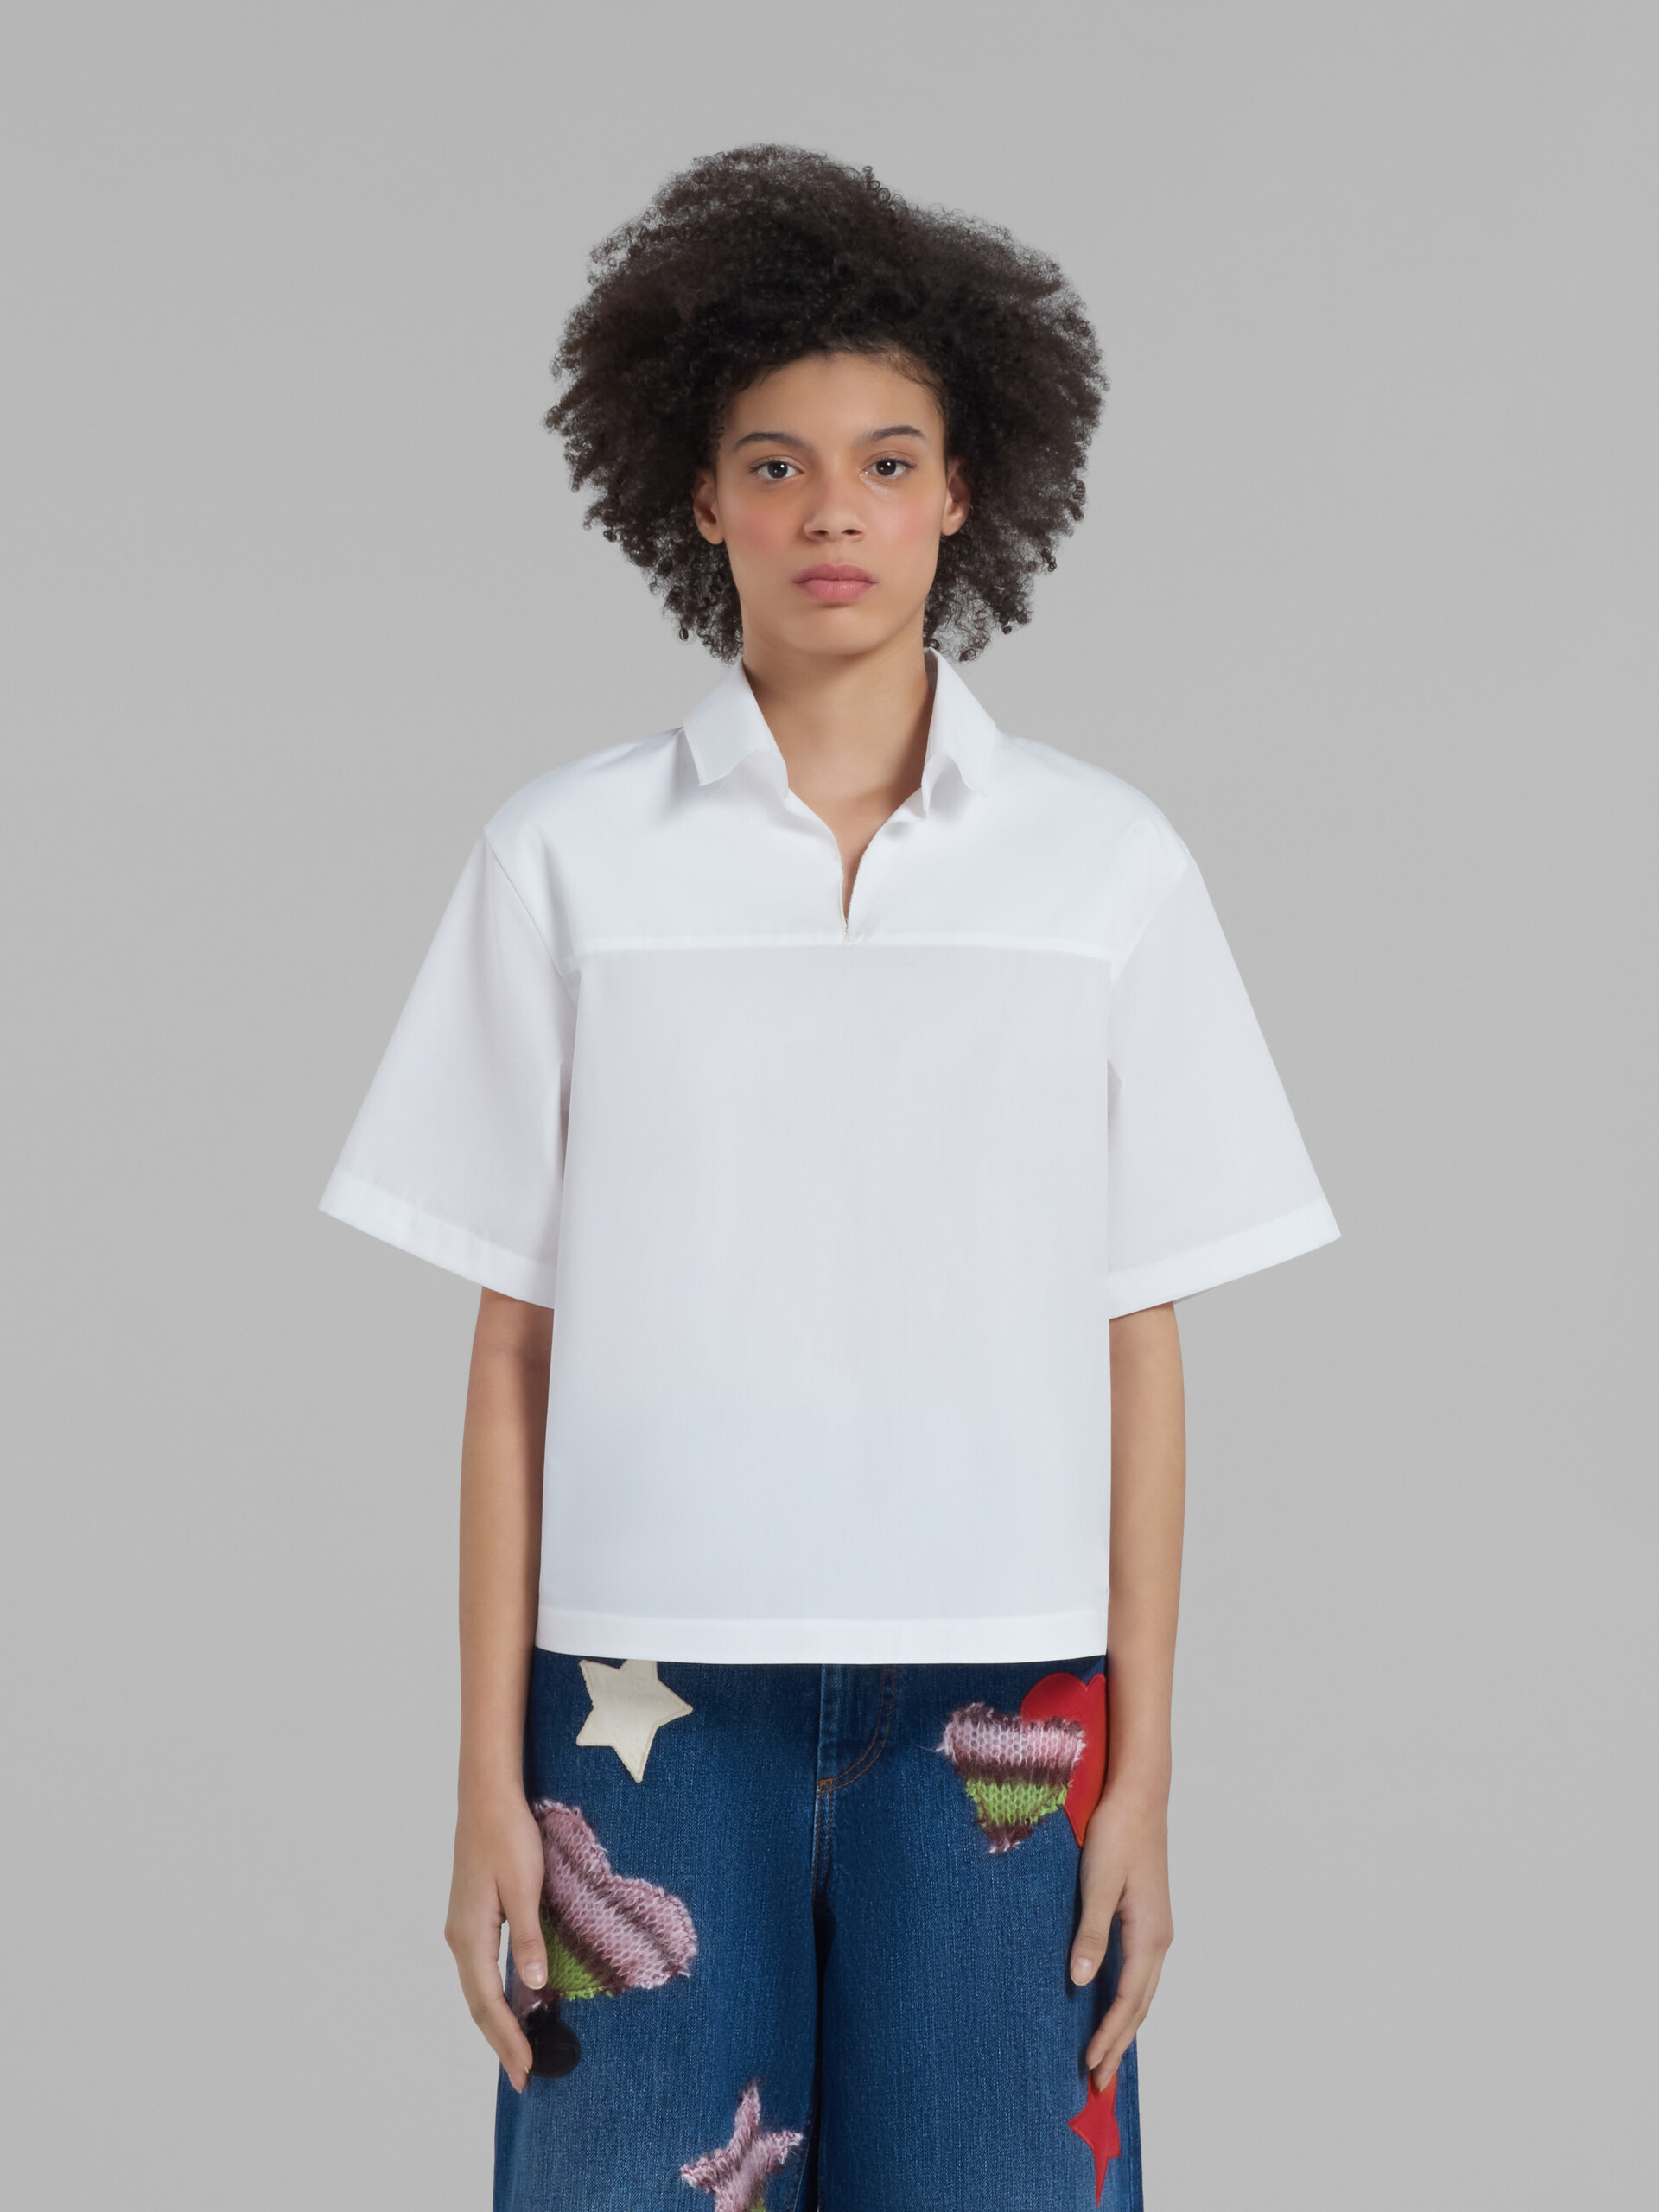 Blusa blanca de popelina ecológica con parte trasera estilo polo - Camisas - Image 2